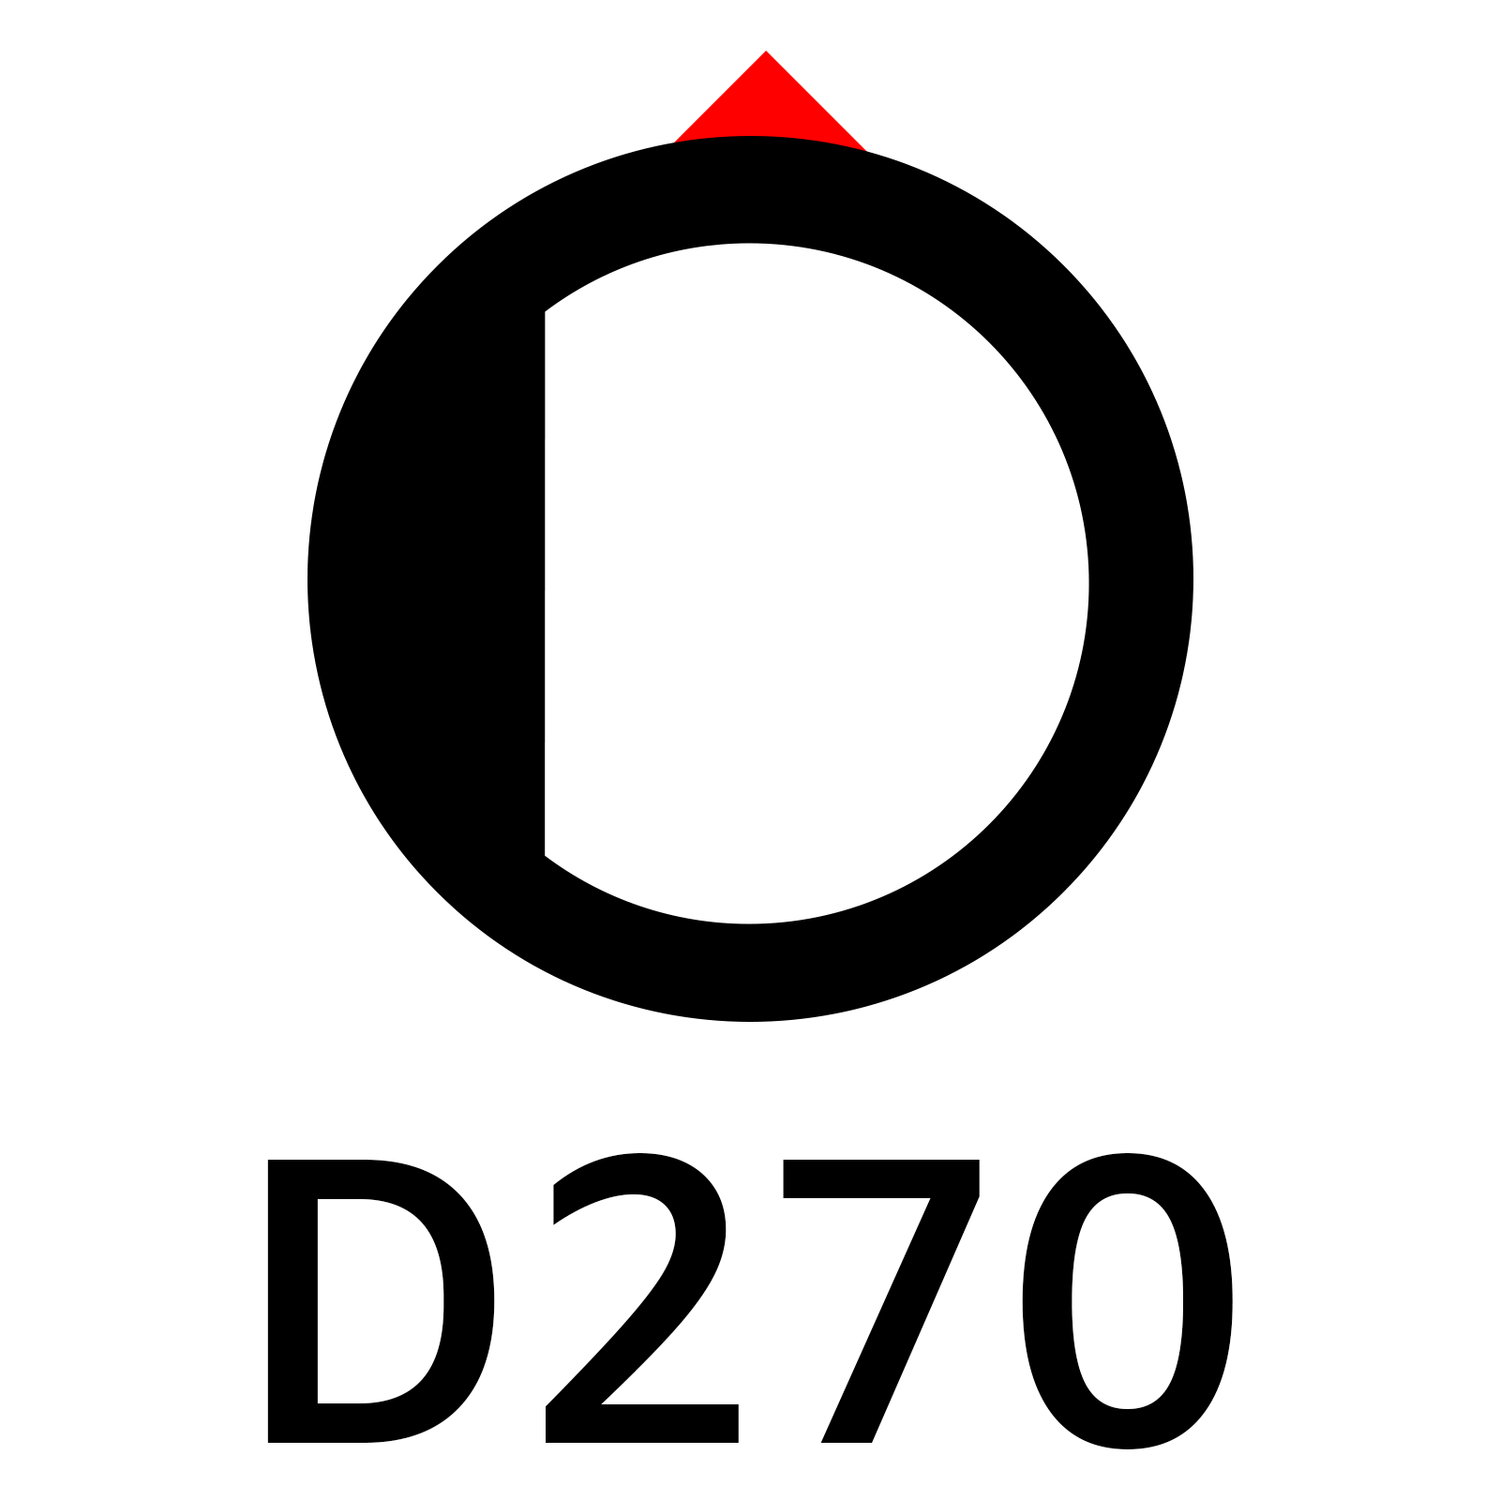 D270 Hole